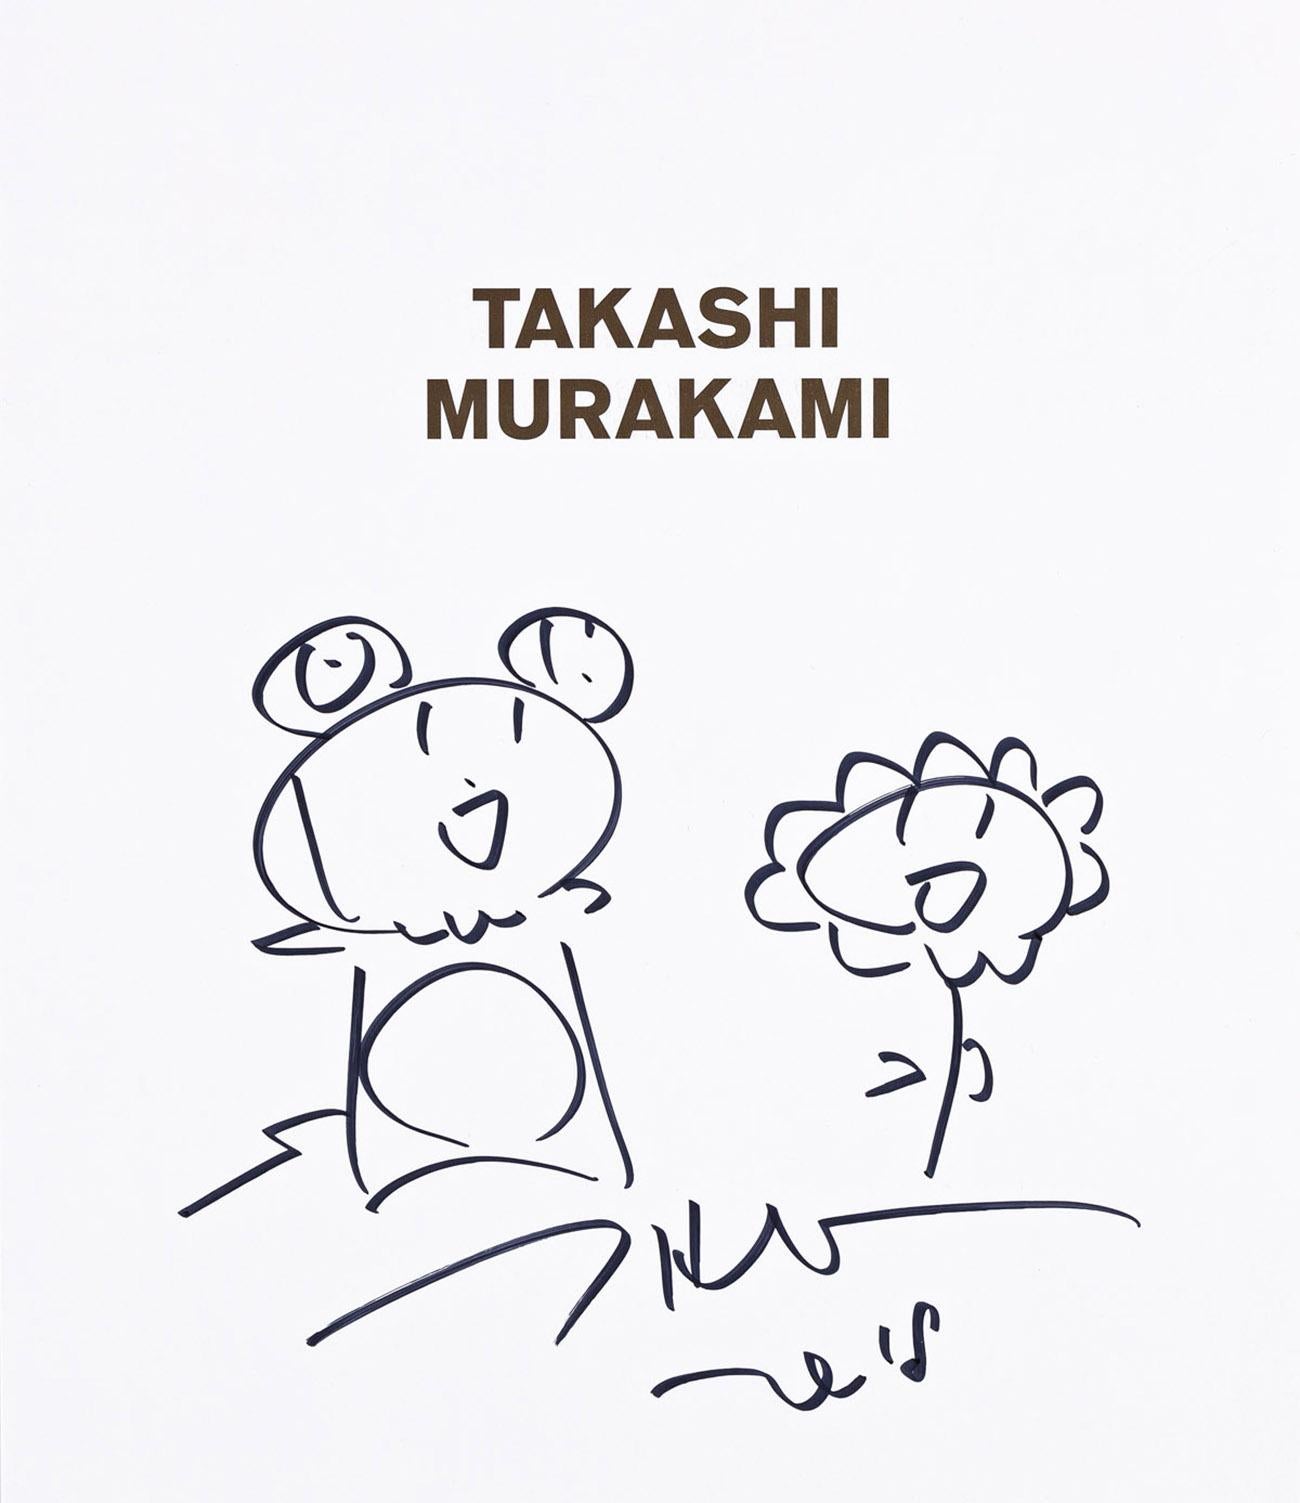 Takashi Murakmai Blumenzeichnung 2018  (Murakami Der Octopus sitzt auf seinem eigenen Bein).  (Pop-Art), Print, von Takashi Murakami